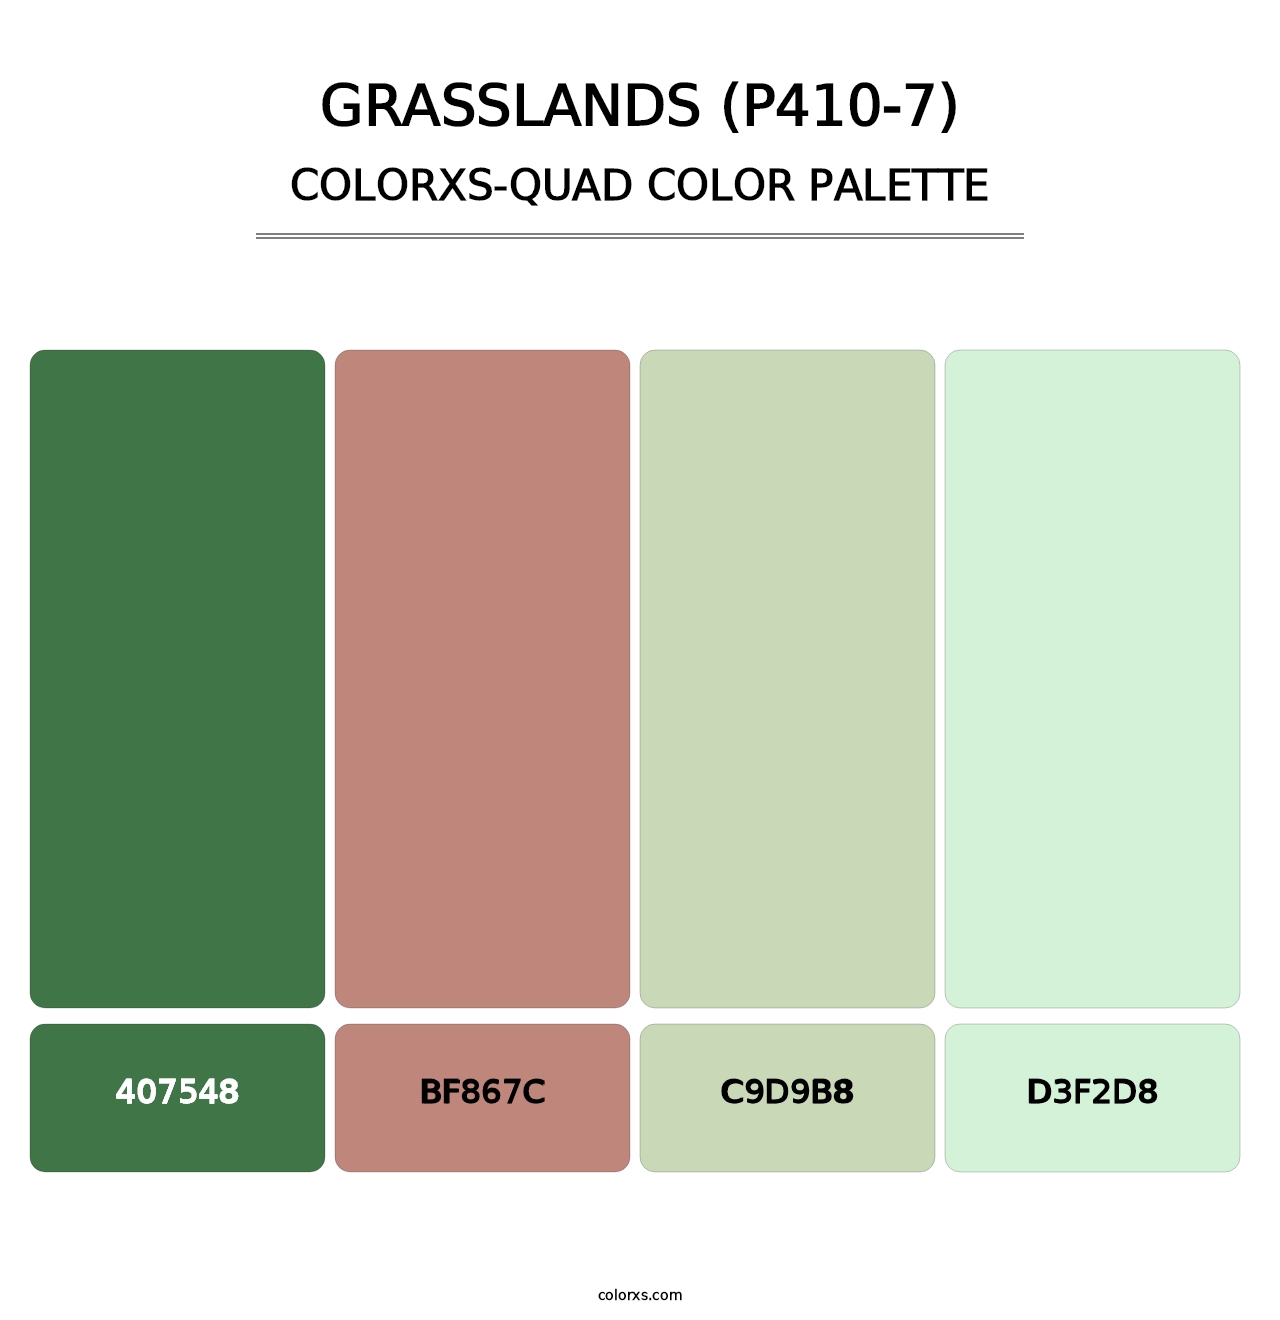 Grasslands (P410-7) - Colorxs Quad Palette